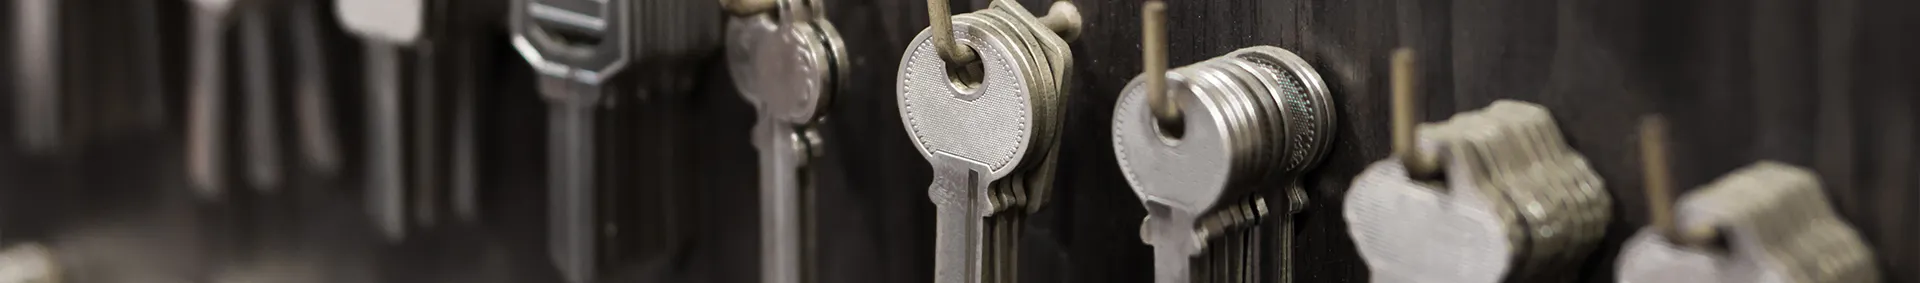 Key safe